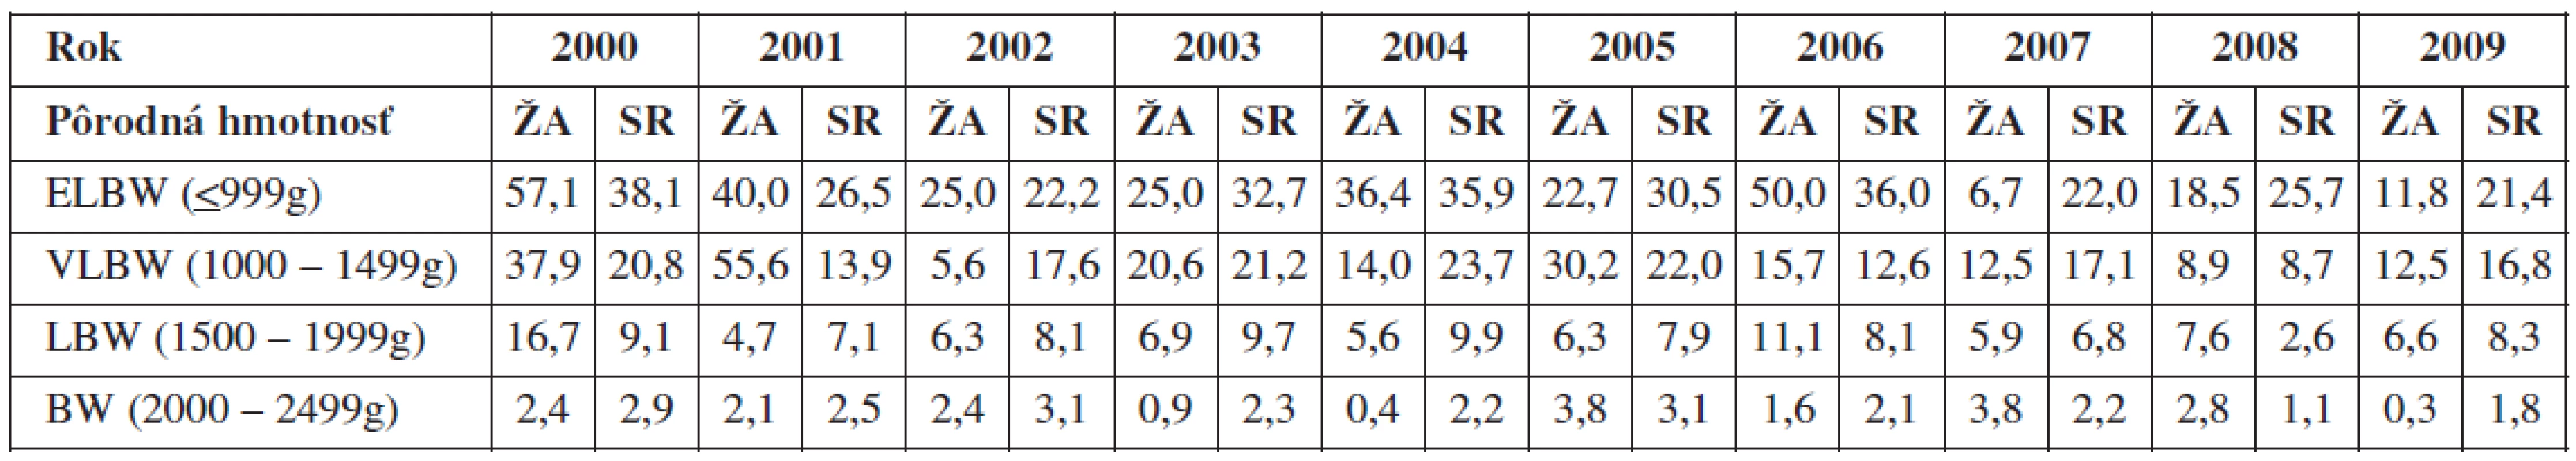 Celková perinatálna úmrtnosť v Žilinskom kraji vs. SR (2000-2009) podľa pôrodnej hmotnosti novorodencov, hodnoty uvádzané v %